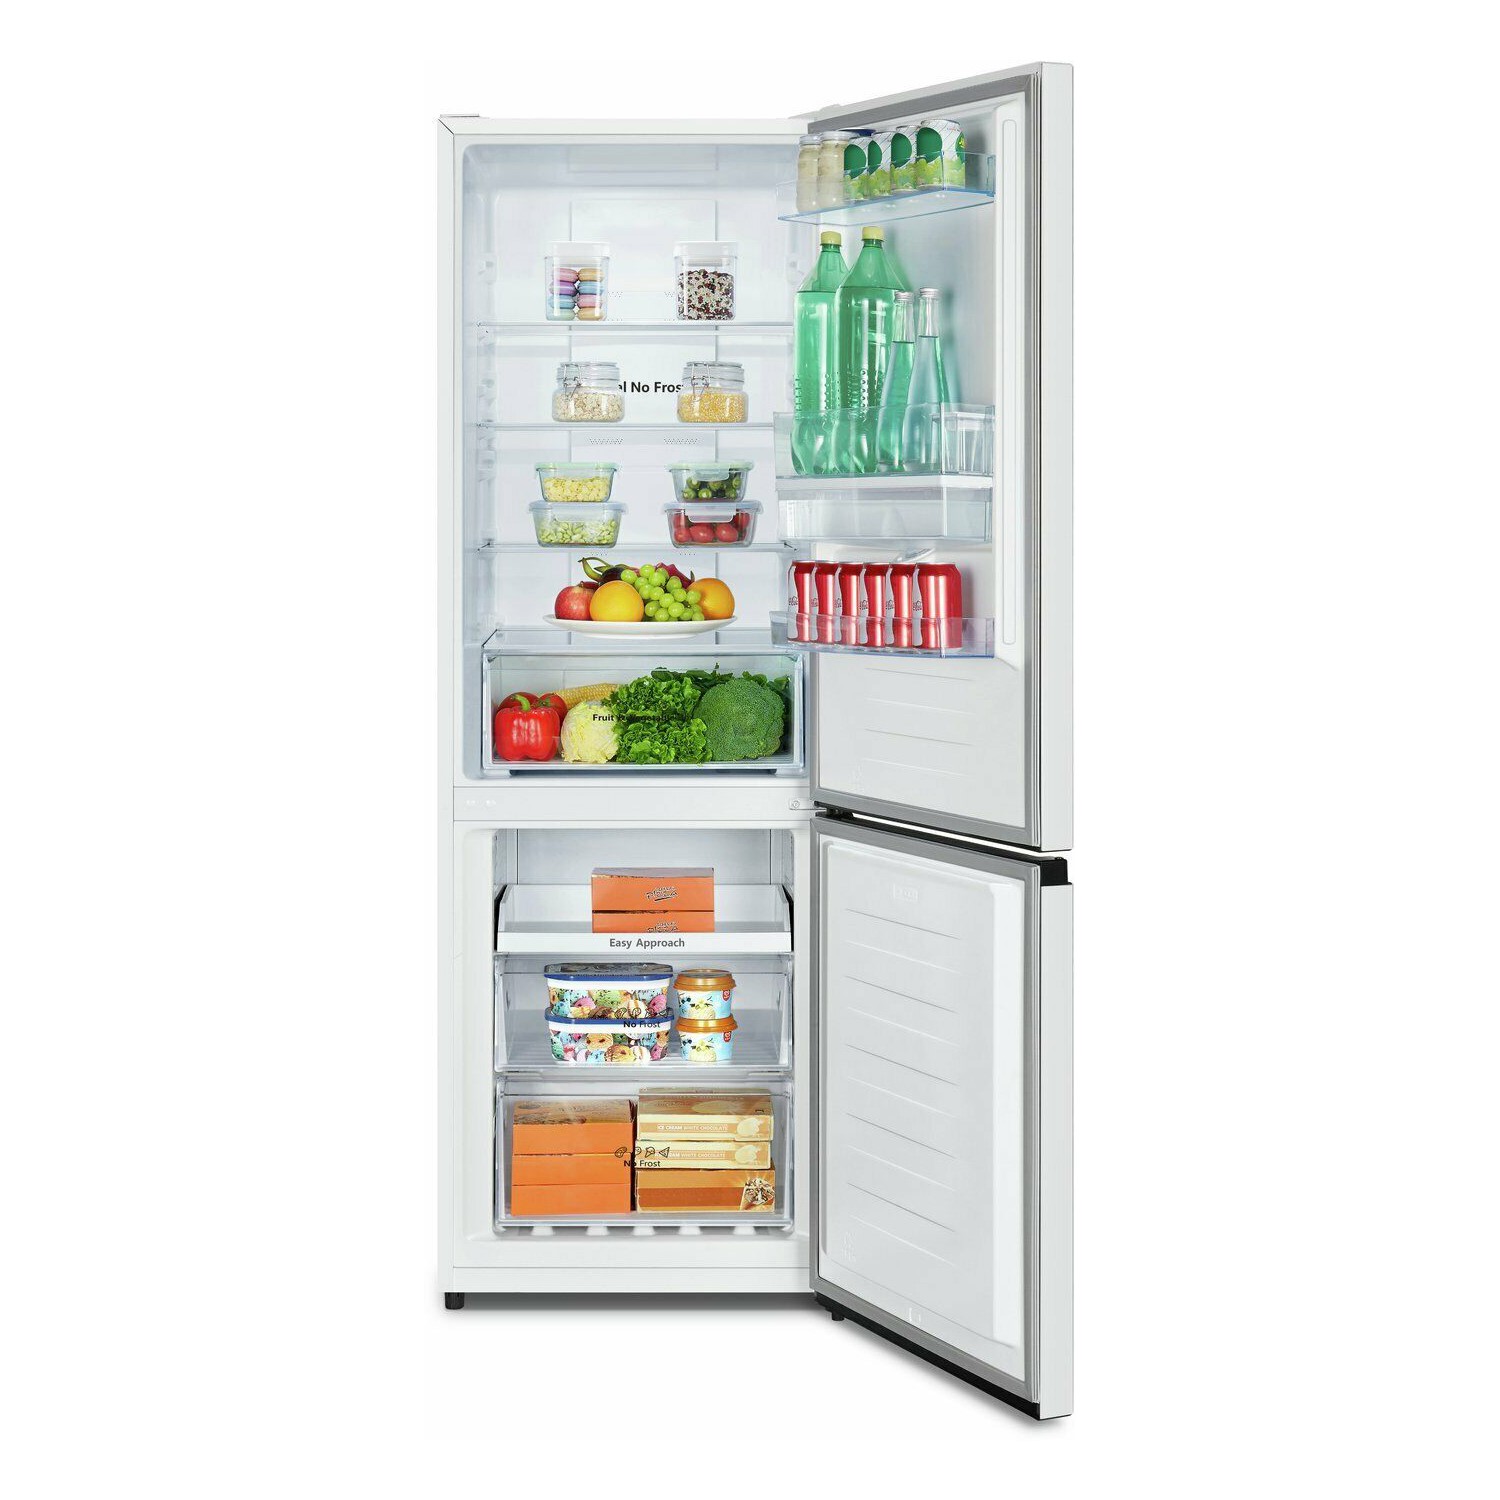 10+ Lg fridge freezer junk mail ideas